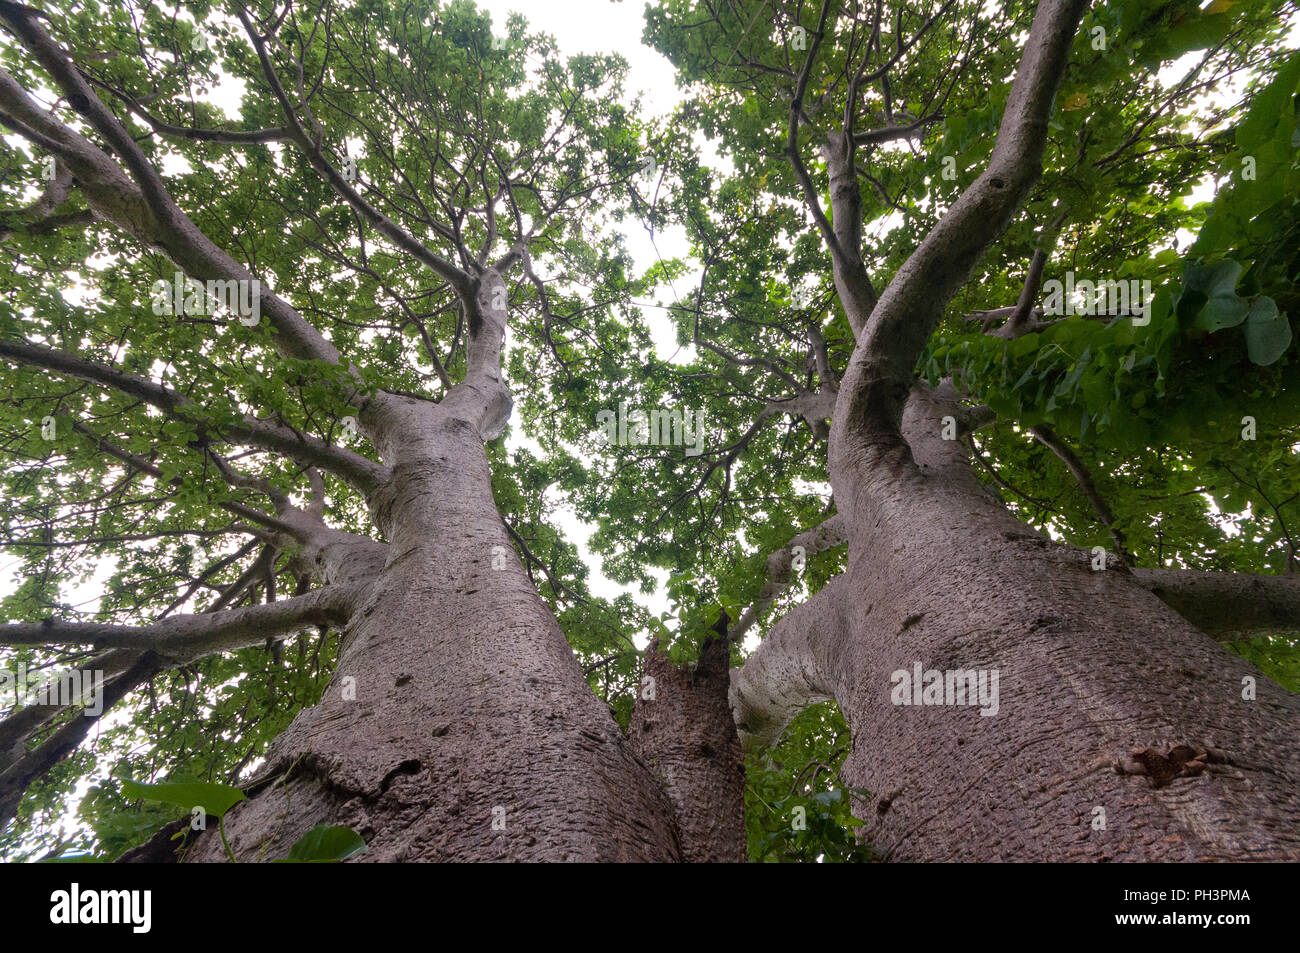 El tronco, las ramas superiores y el follaje de un gigantesco árbol Boabab shot con una lente gran angular de directamente bajo el árbol. Situado cerca de Vasai Fort, Mumbai. Foto de stock